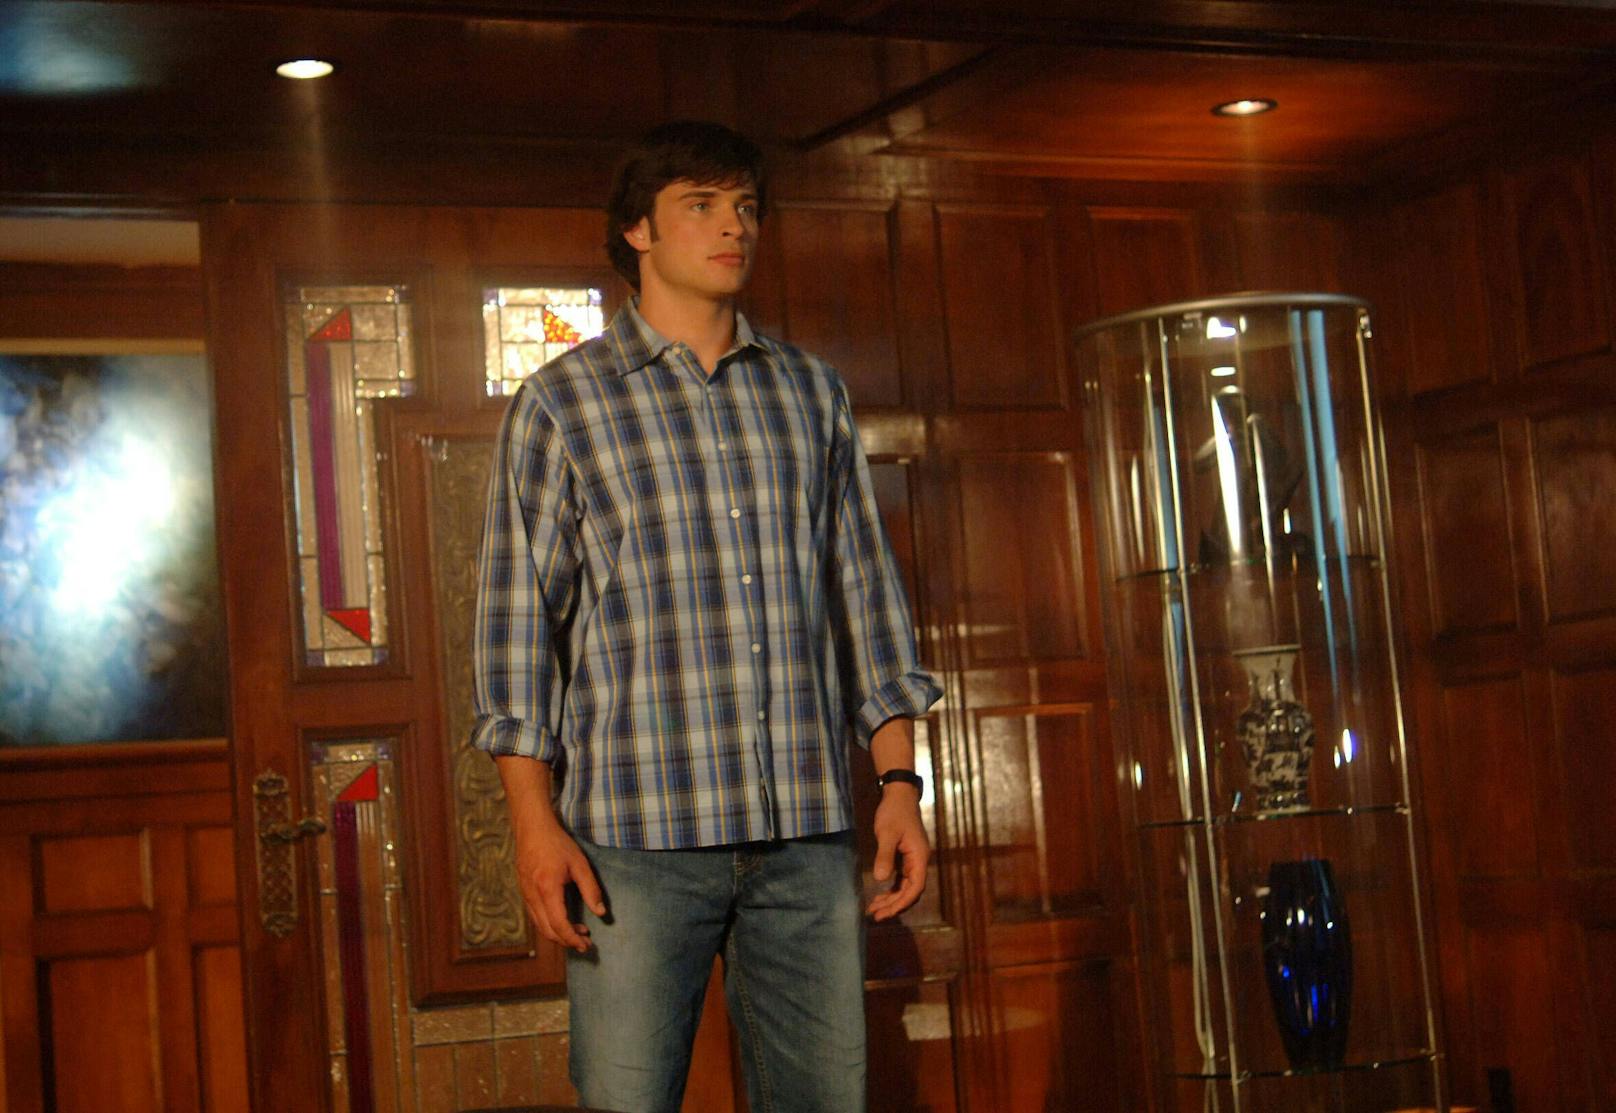 Tom Welling konnte sich durch seine Darbietung als Clark Kent in der Serie "Smallville" (2001-2011) einen Namen machen.